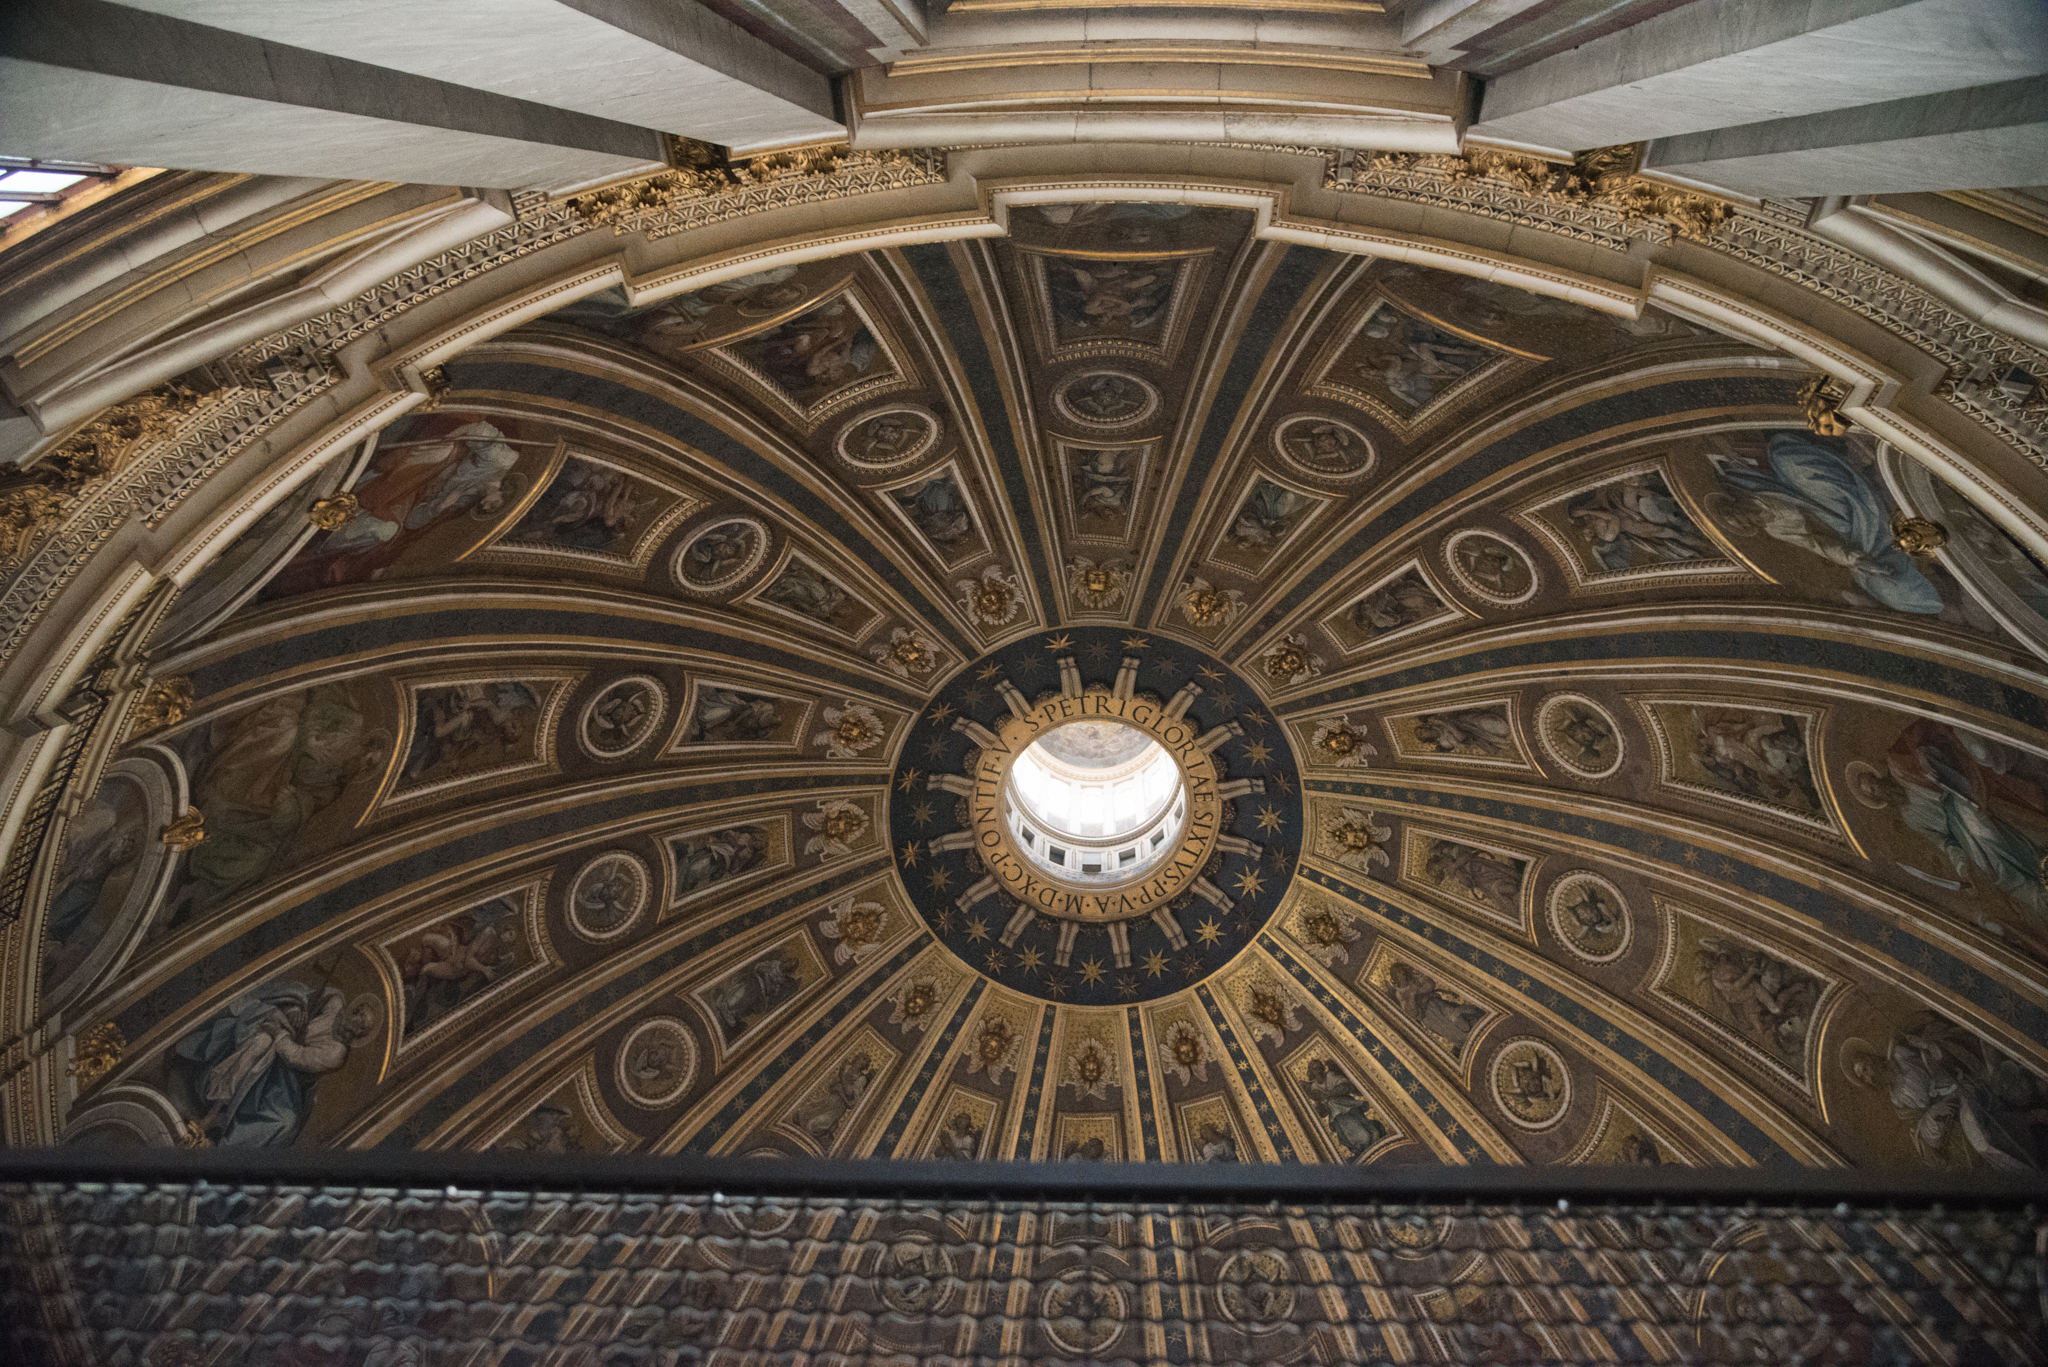 Cupola - St. Peter's Basilica